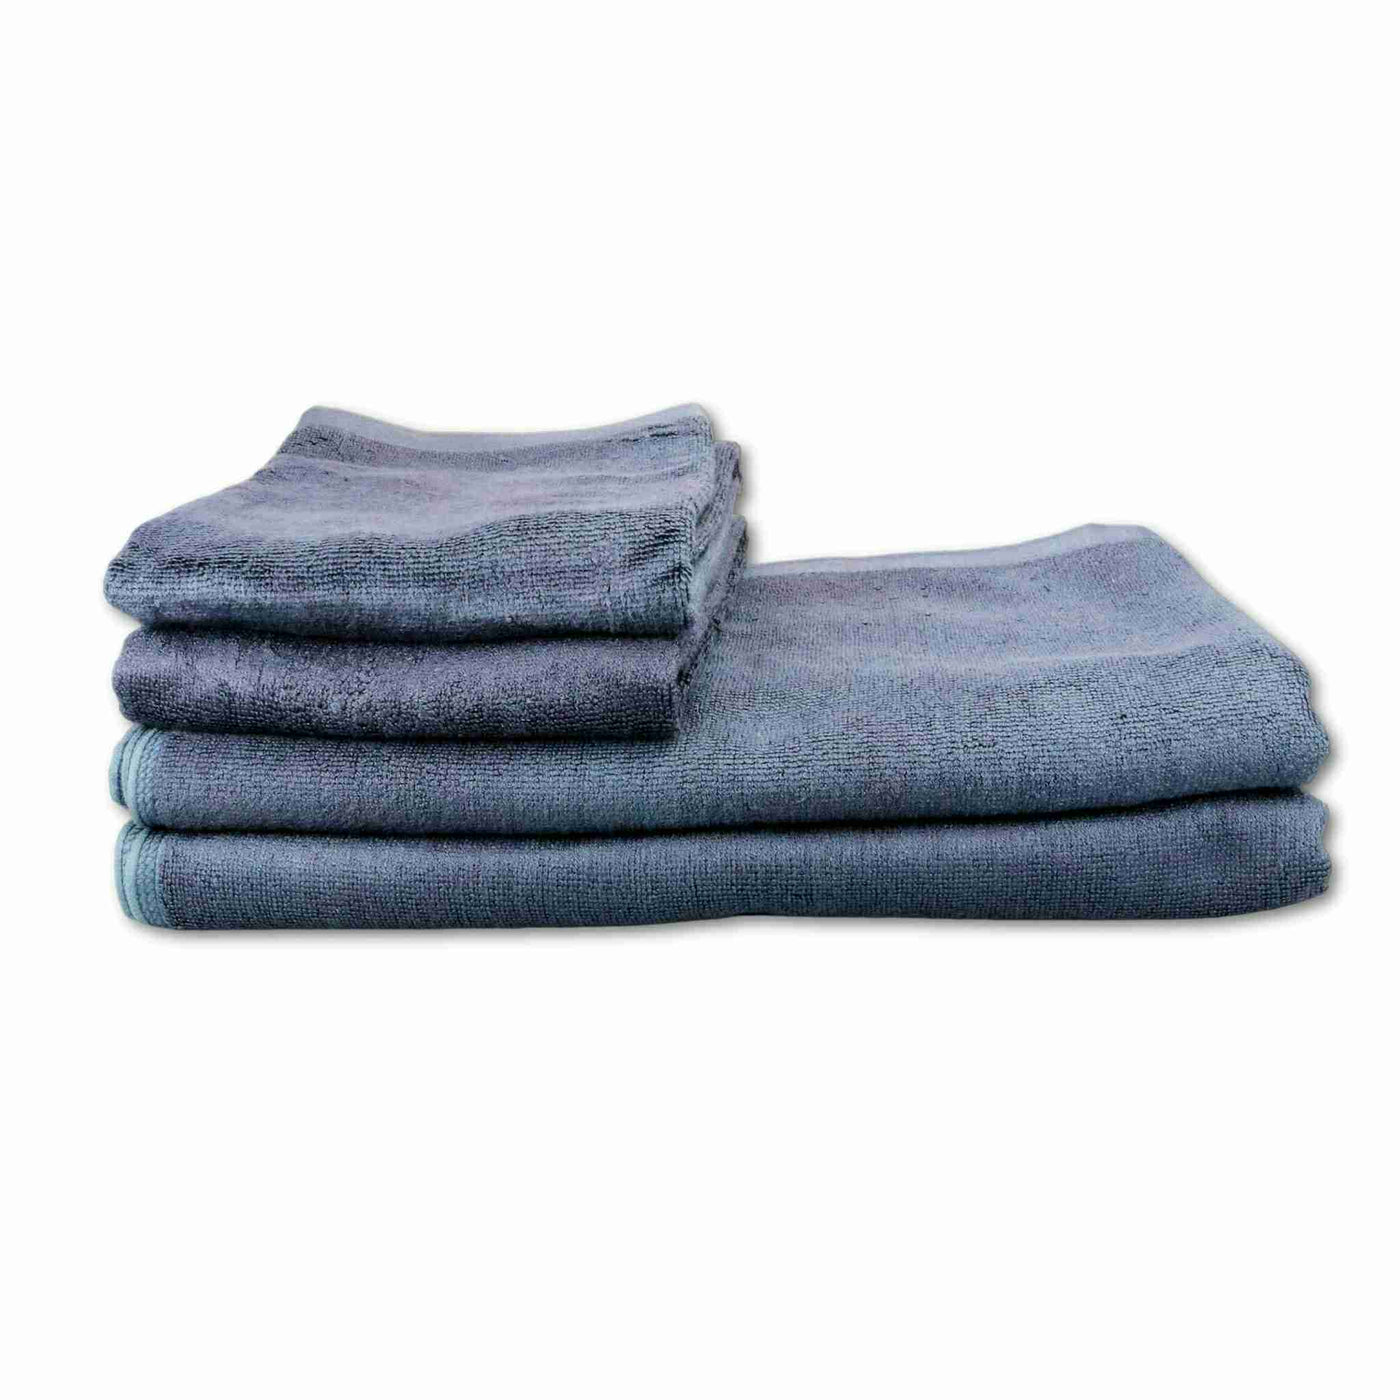 Black bamboo bath towels - 4 pack